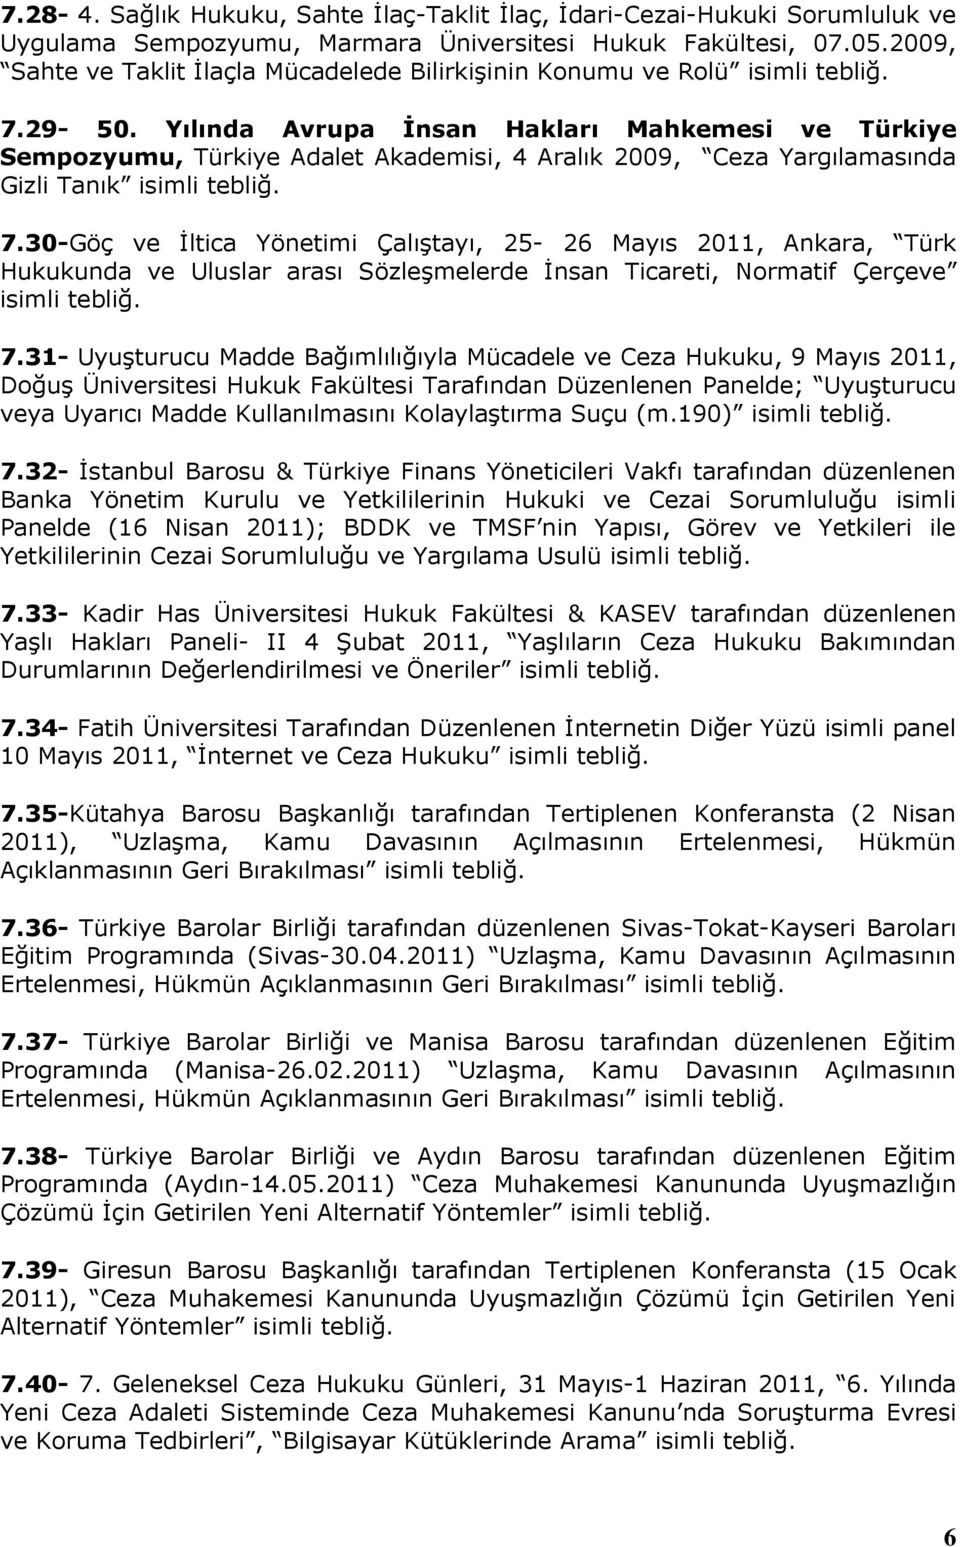 Yılında Avrupa İnsan Hakları Mahkemesi ve Türkiye Sempozyumu, Türkiye Adalet Akademisi, 4 Aralık 2009, Ceza Yargılamasında Gizli Tanık isimli tebliğ. 7.